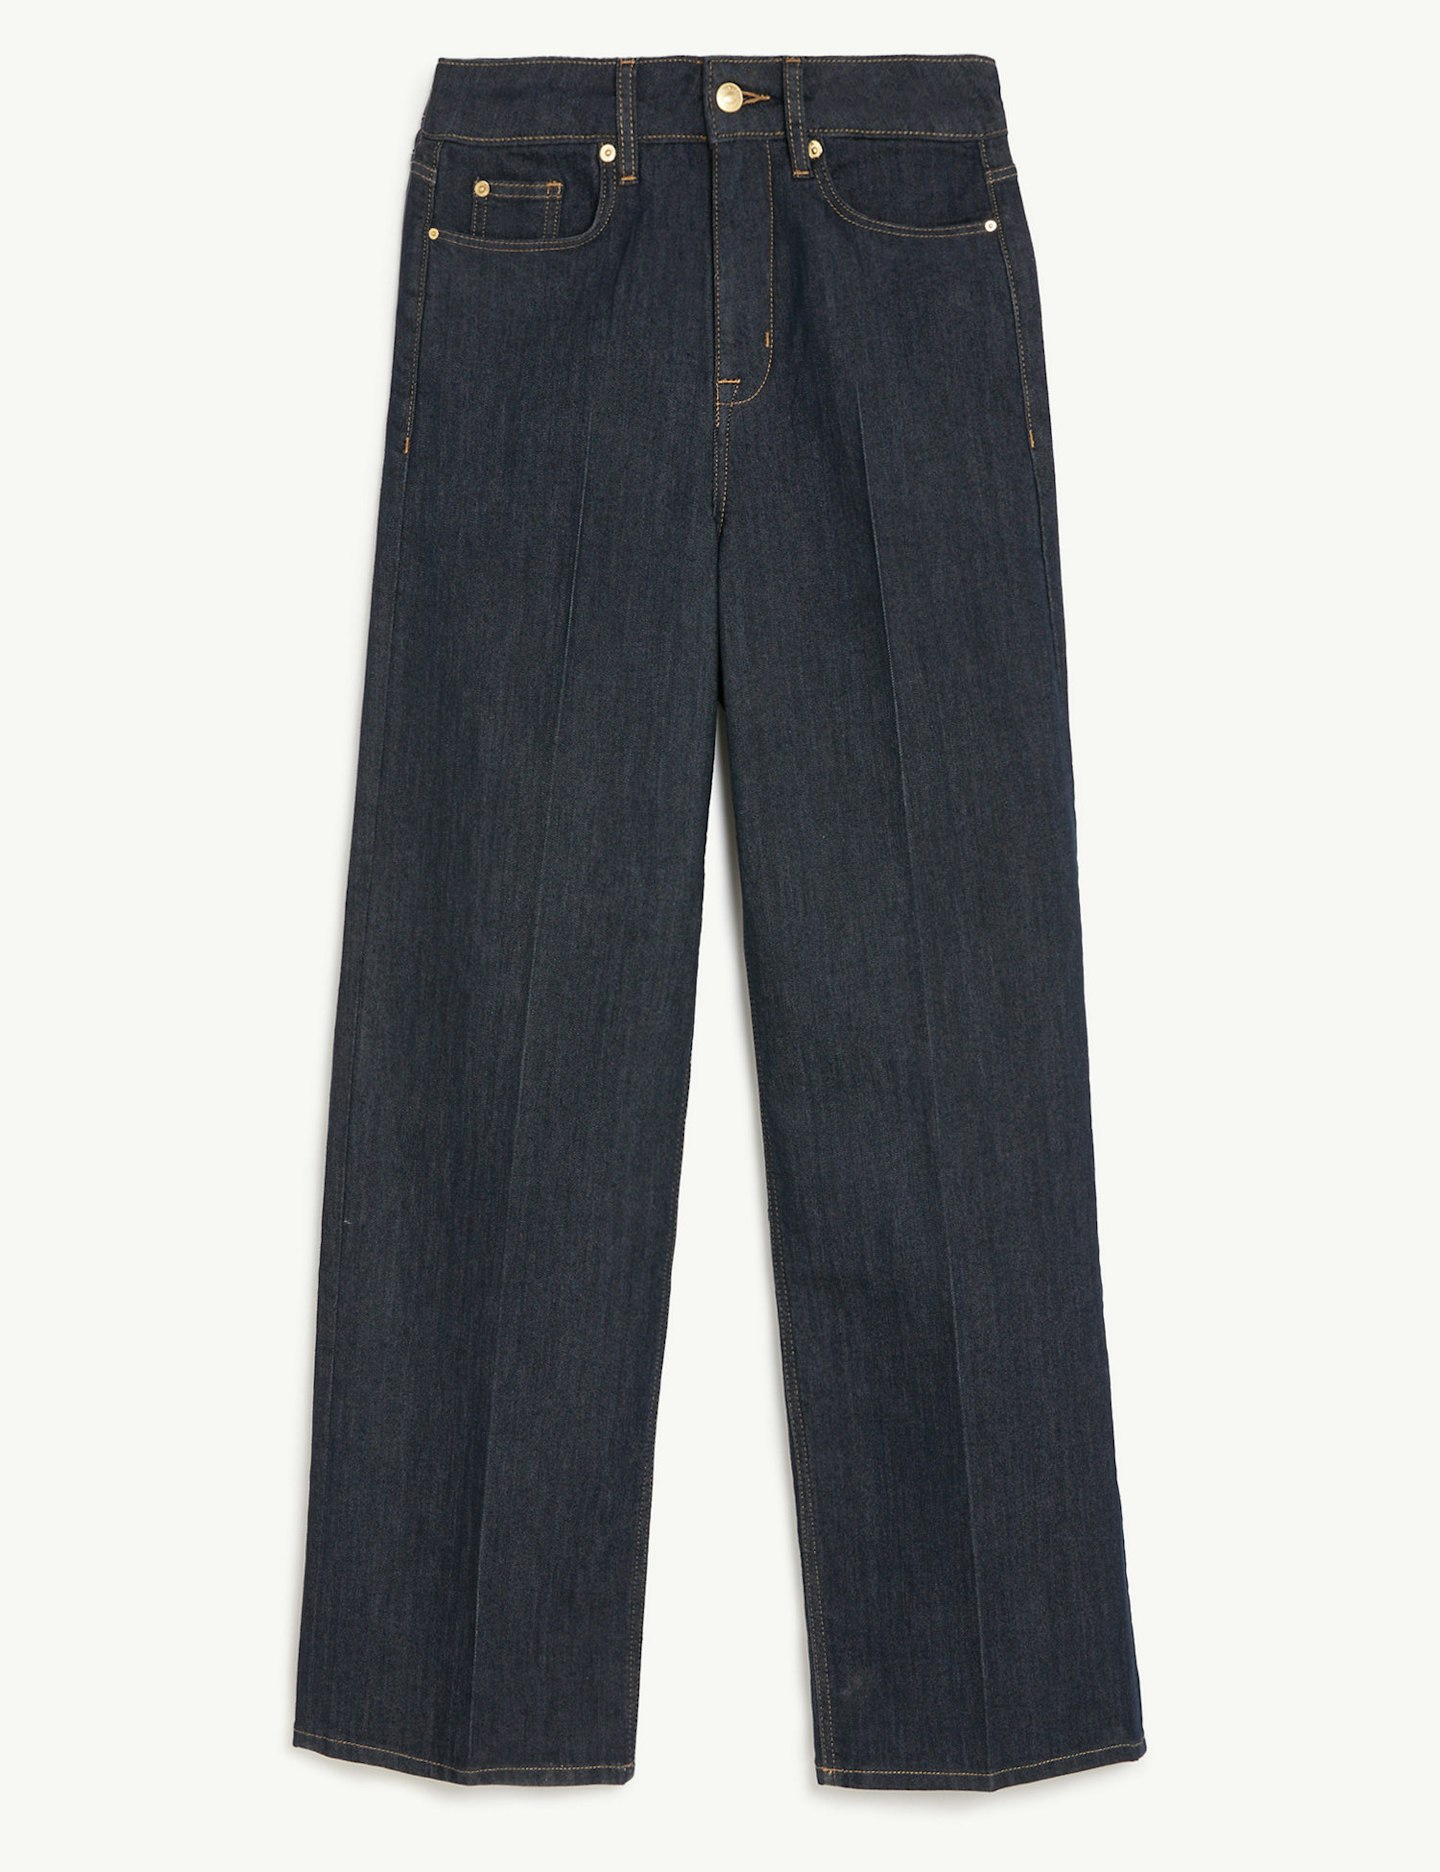 Sienna Miller M&S jeans